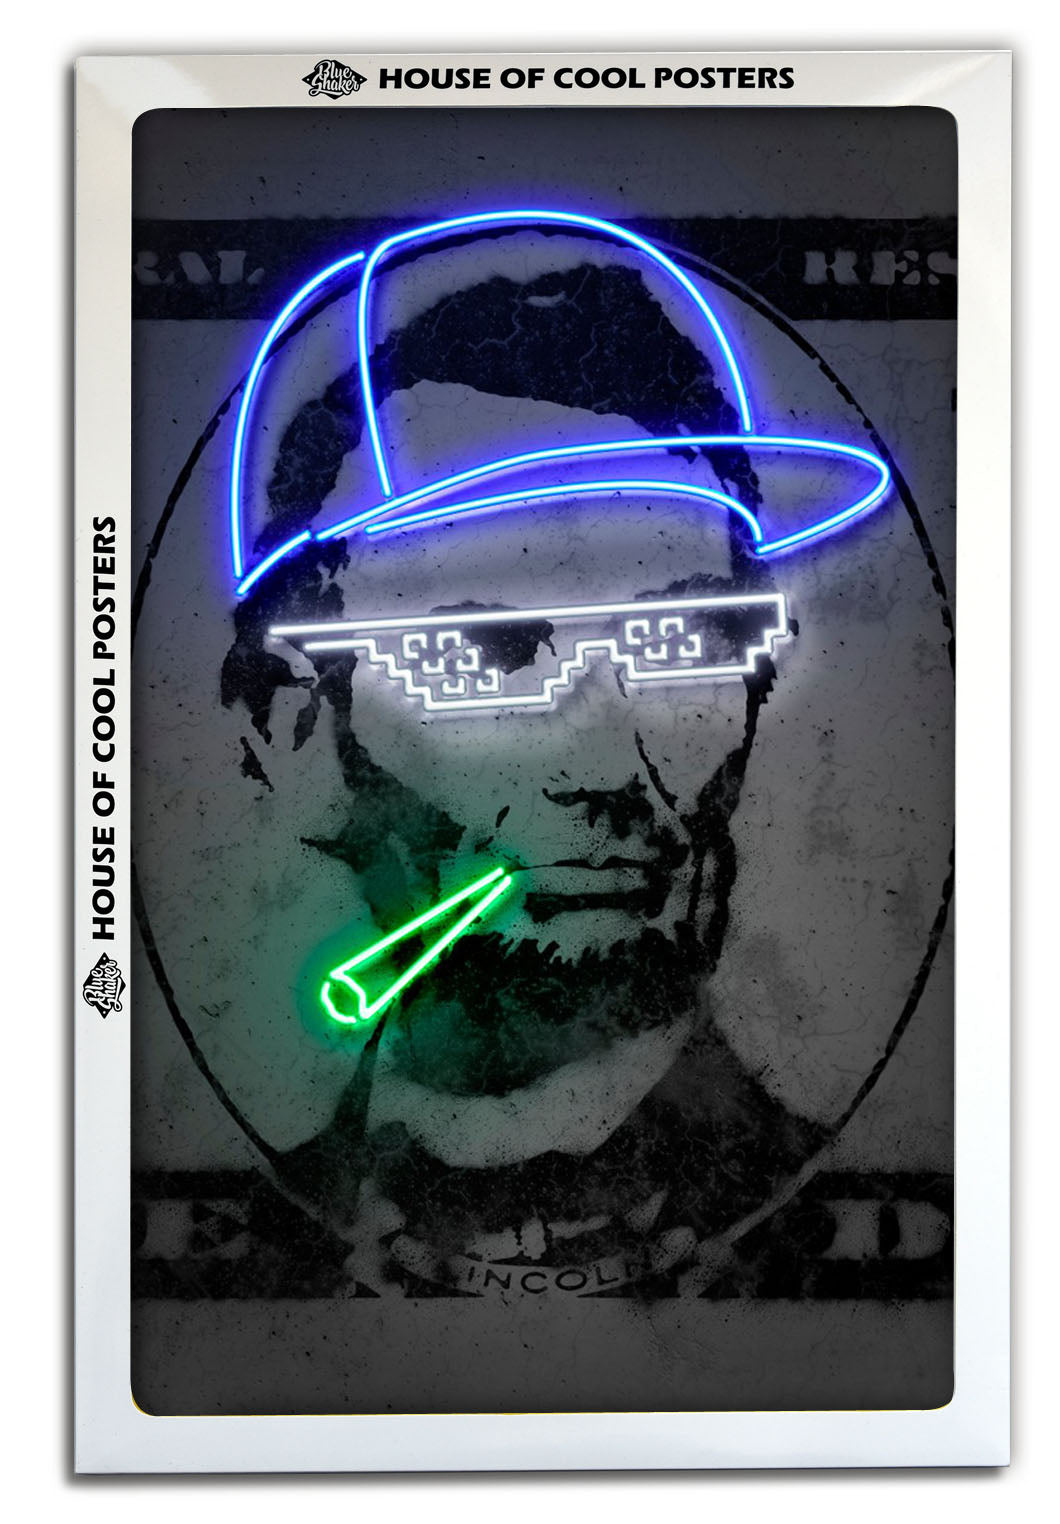 Lincoln-neon-art, print-BLUE SHAKER